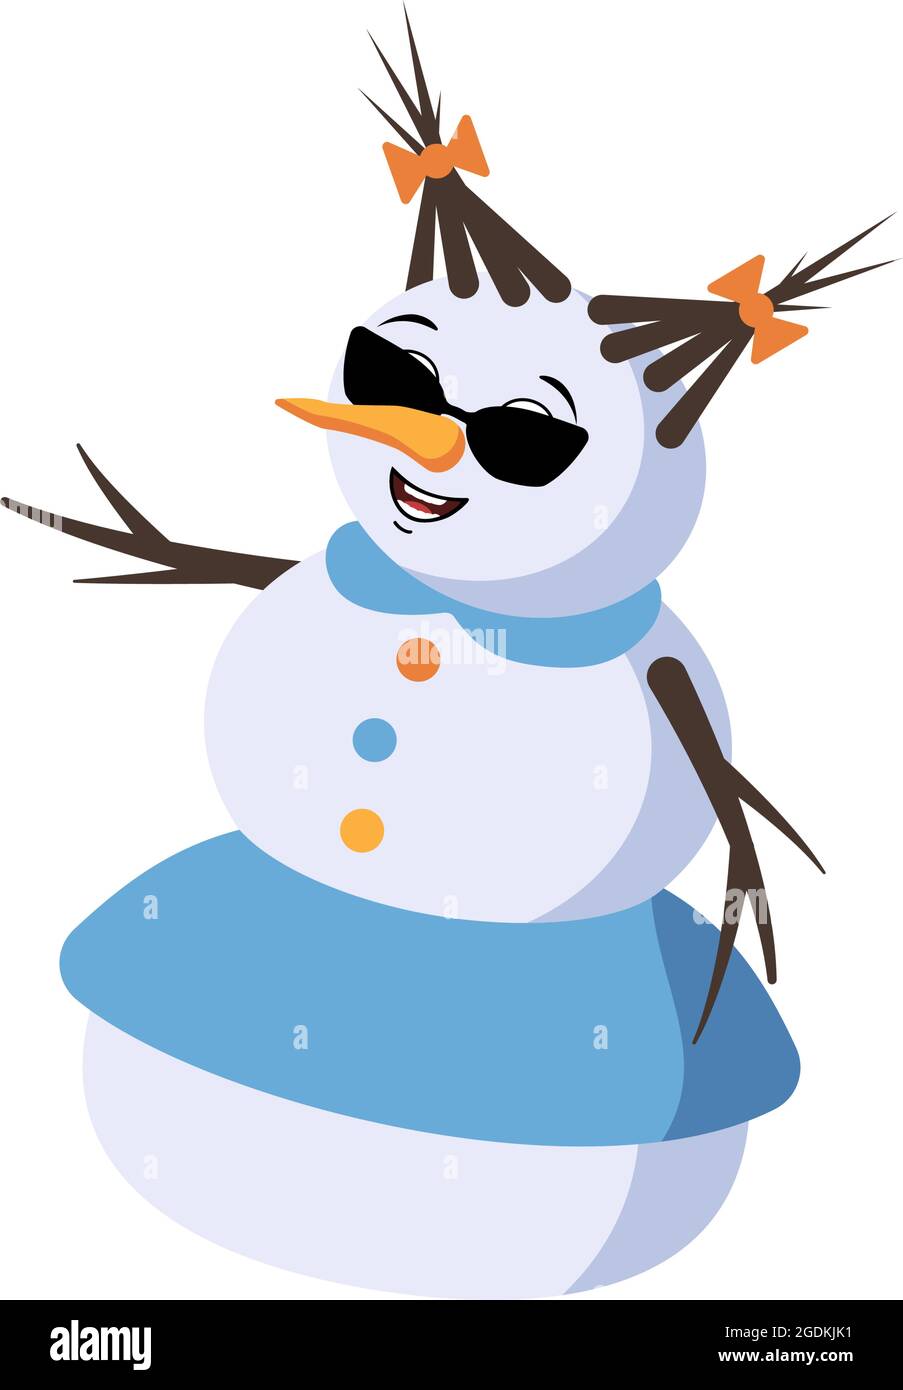 Simpatica donna di neve natalizia con occhiali ed emozioni gioiose, volto sorridente, occhi felici, braccia e gambe. Decorazione festiva di Capodanno con espressione gentile Illustrazione Vettoriale